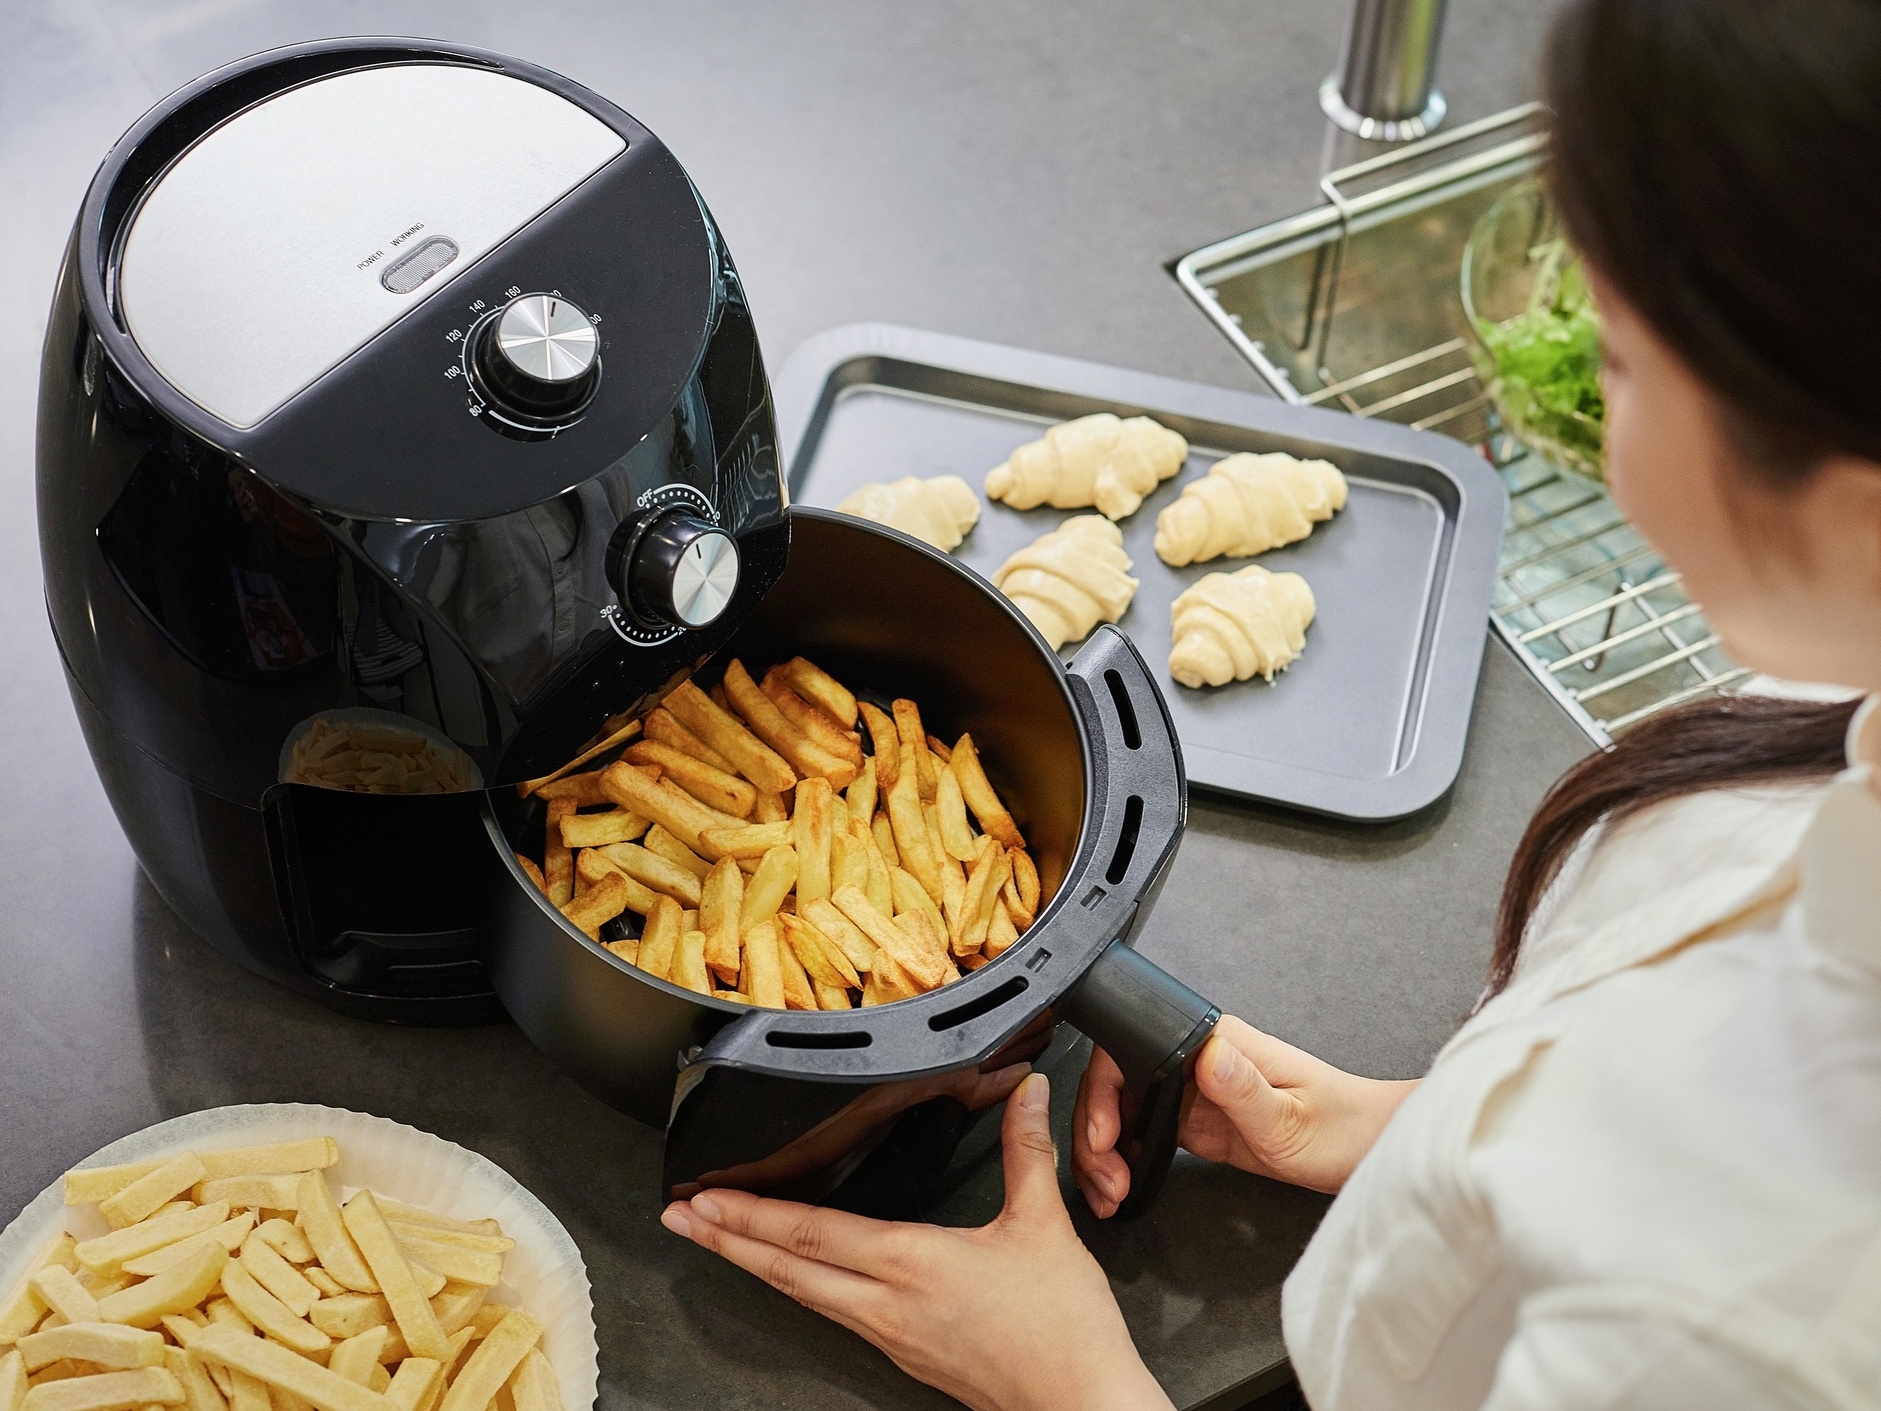  Alertă în bucătărie: De ce poate fi periculos să faci floricele de porumb în friteuza cu aer?